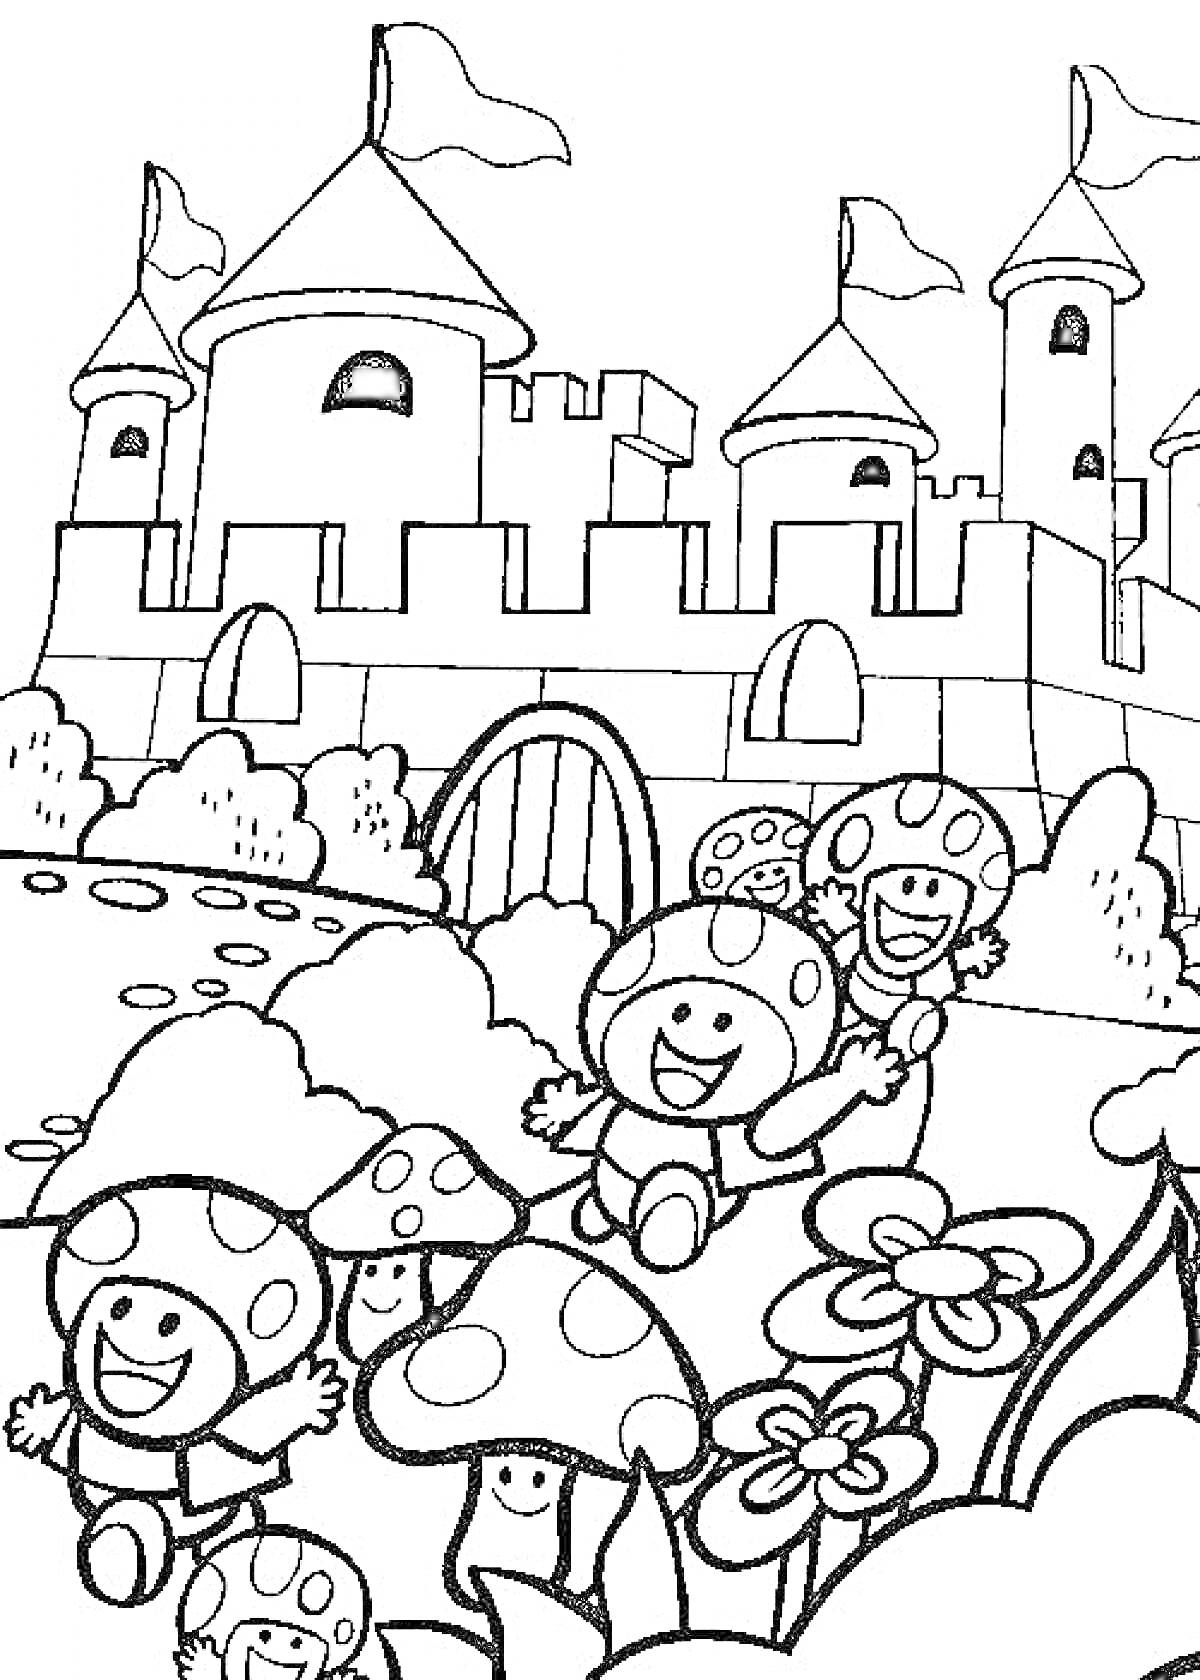 Раскраска Традиционные персонажи Марио - грибы Тод и замок, грибные человечки на переднем плане на фоне замка